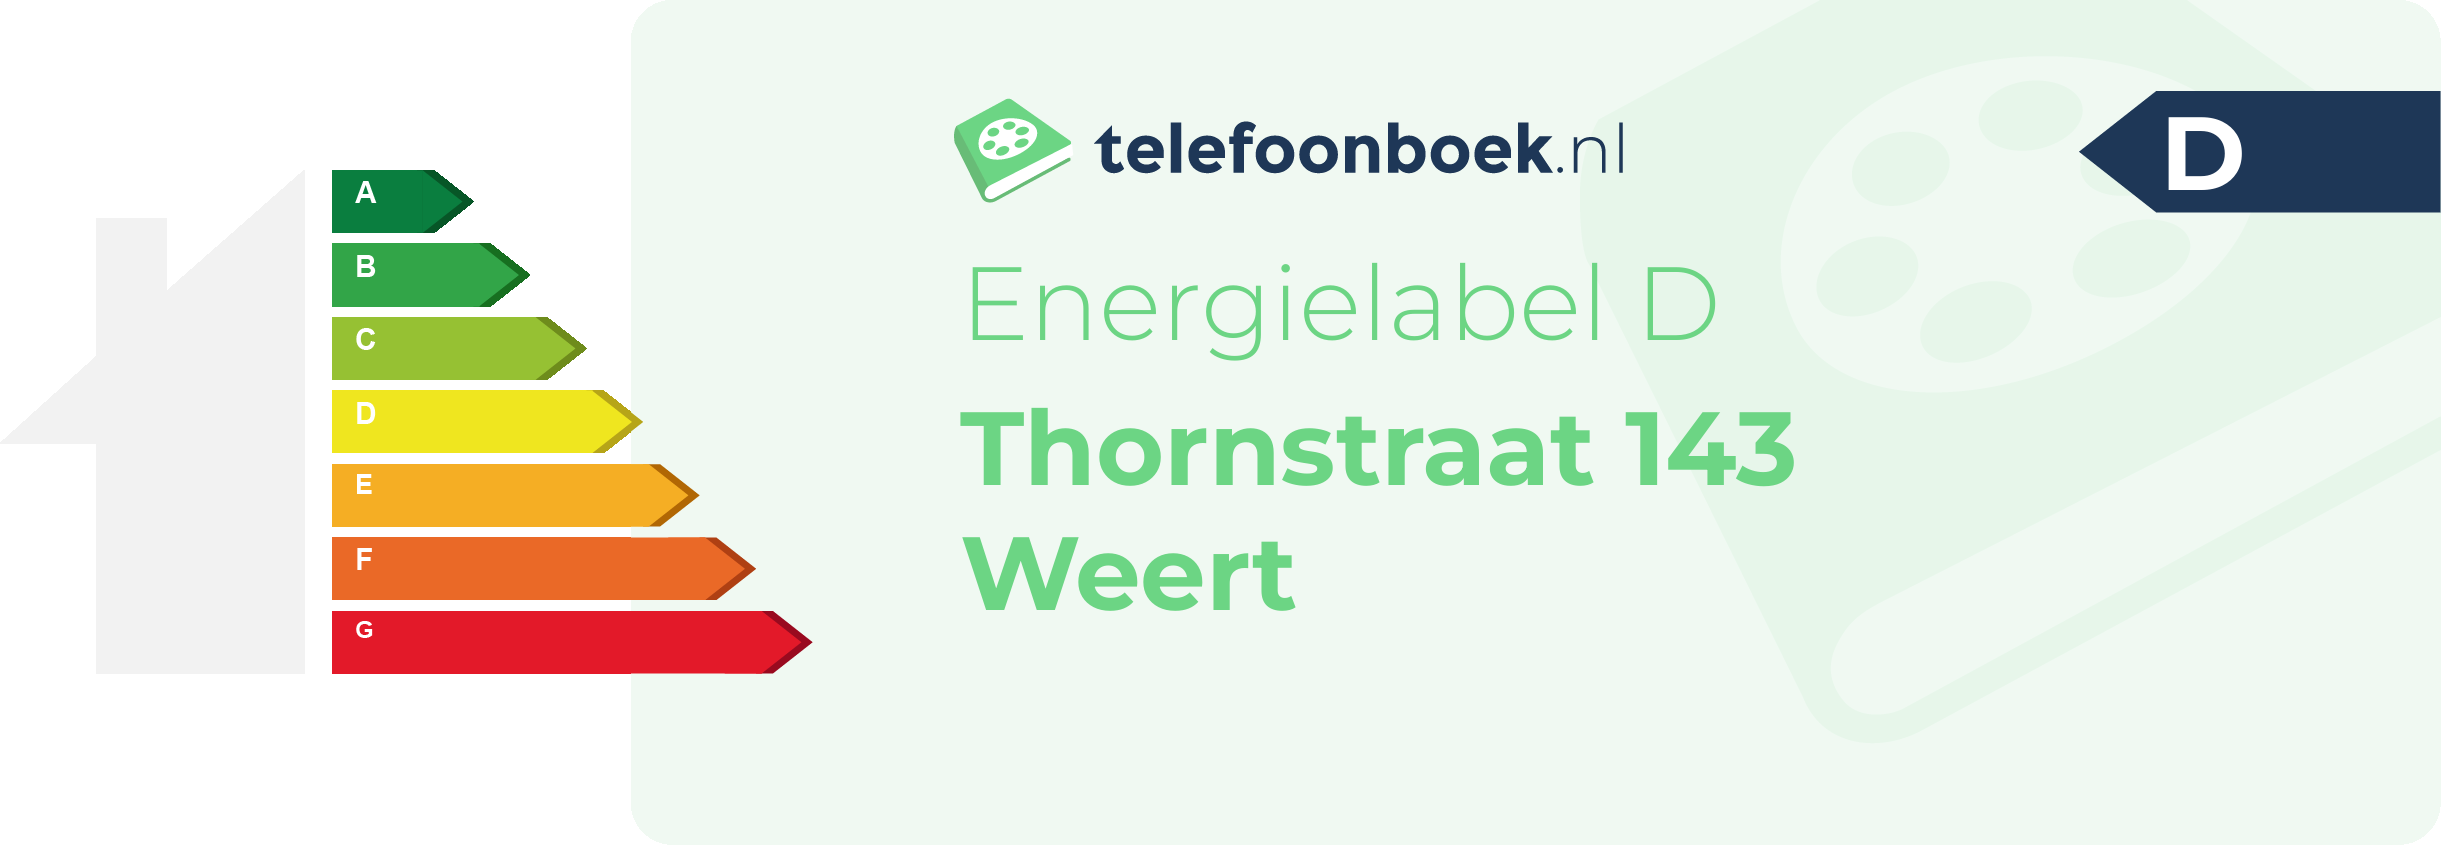 Energielabel Thornstraat 143 Weert